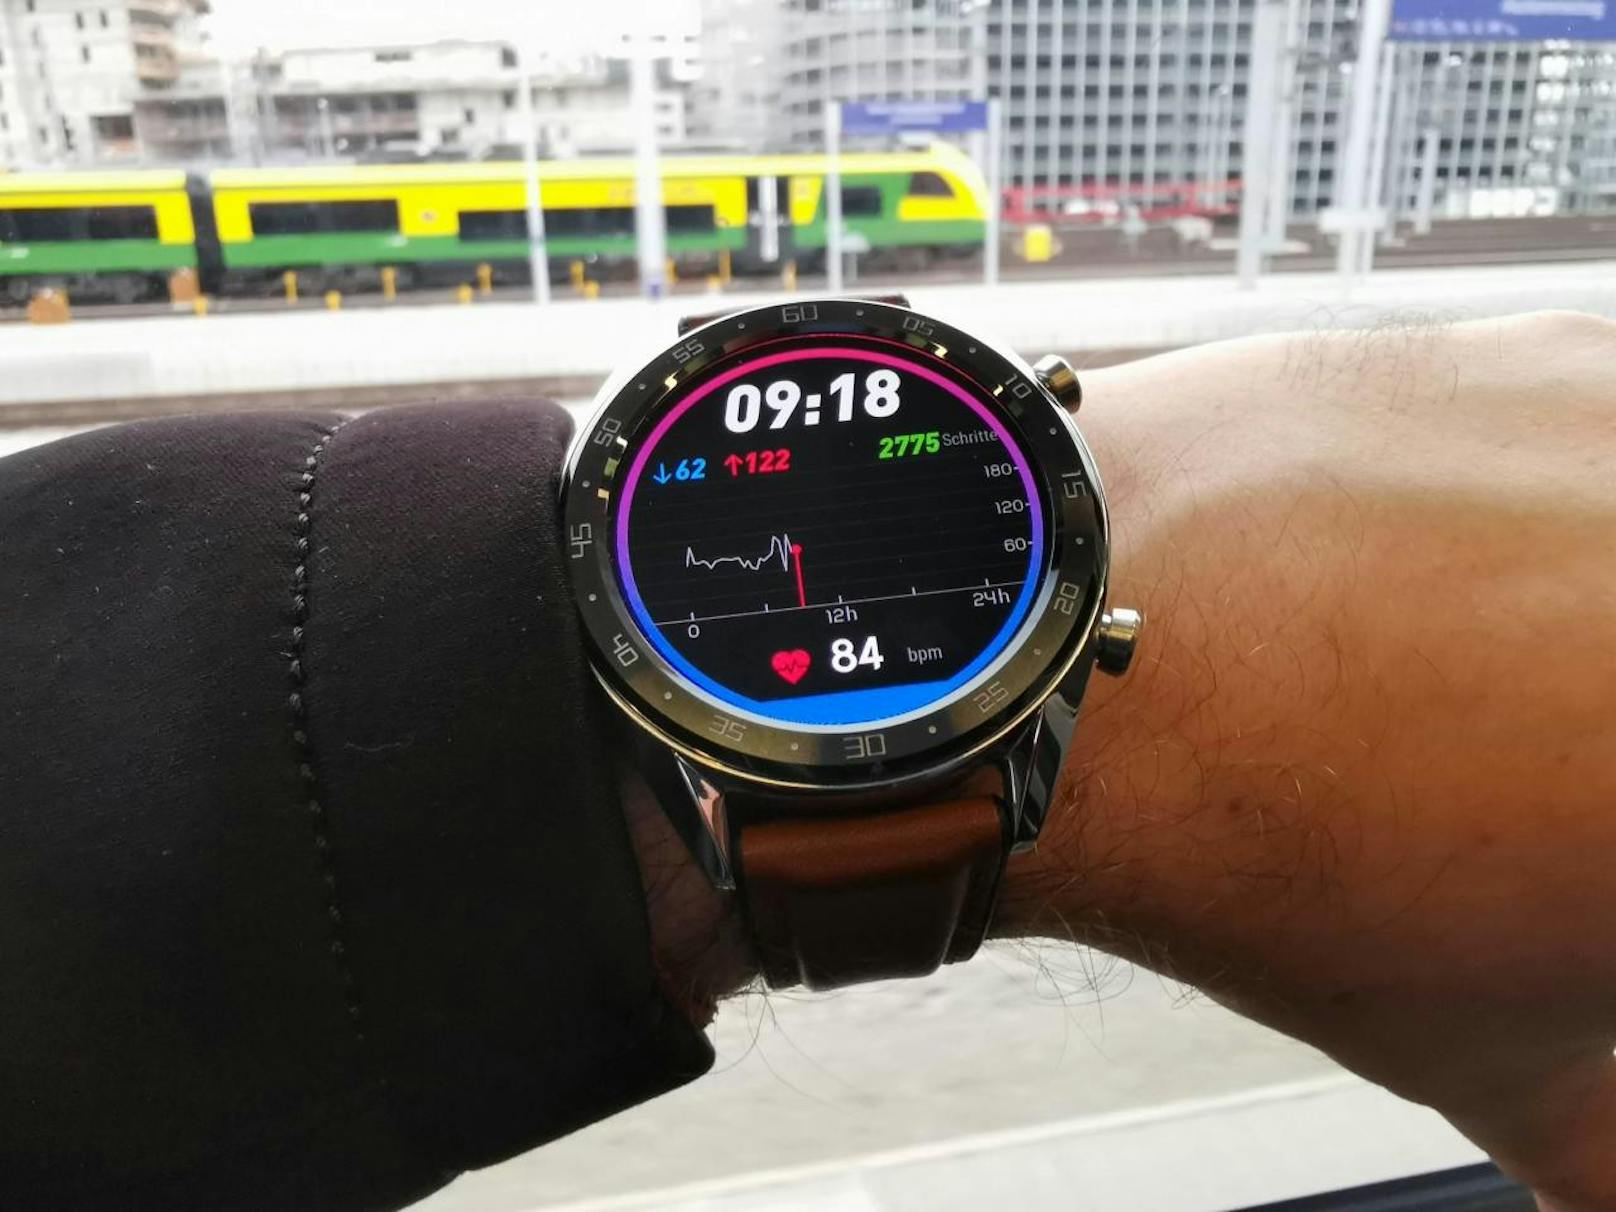 Die Huawei Watch GT bringt nicht noch mehr Funktionen und Features, sondern fokussiert sich vor allem auf drei Aspekte: einen günstigen Preis, ein starkes Fitnessprogramm und einen ausdauernden Akku.